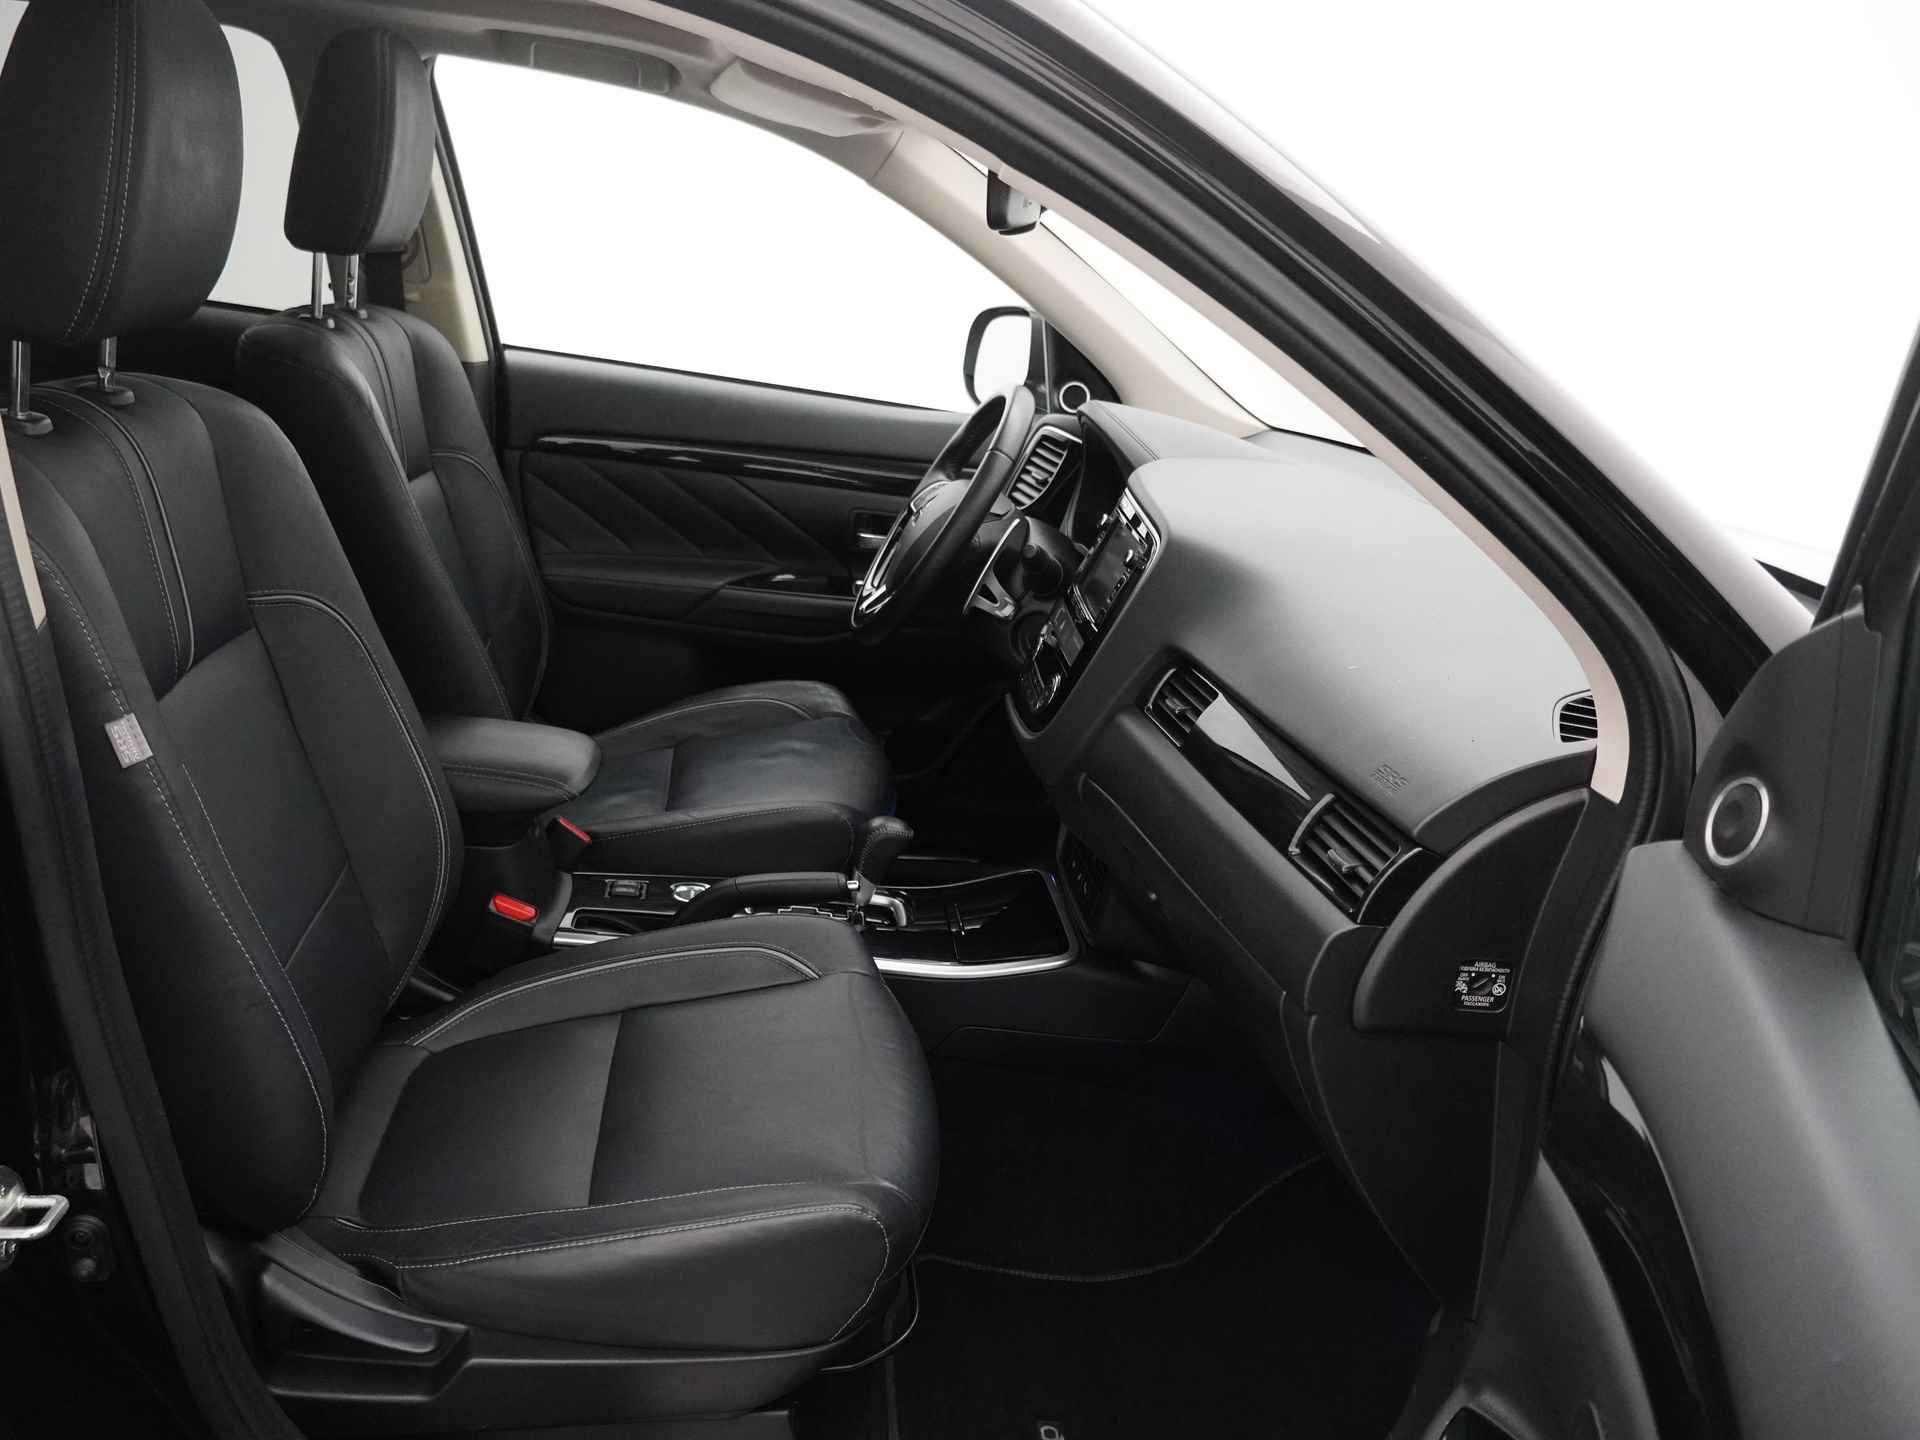 Mitsubishi Outlander 2.0 Instyle+ 4WD - Schuifkanteldak - Lederen bekleding - Voorraam verwarming - Apple CarPlay / Android Auto - Elektrische achterklep - 12 Maanden bovag garantie - 42/48